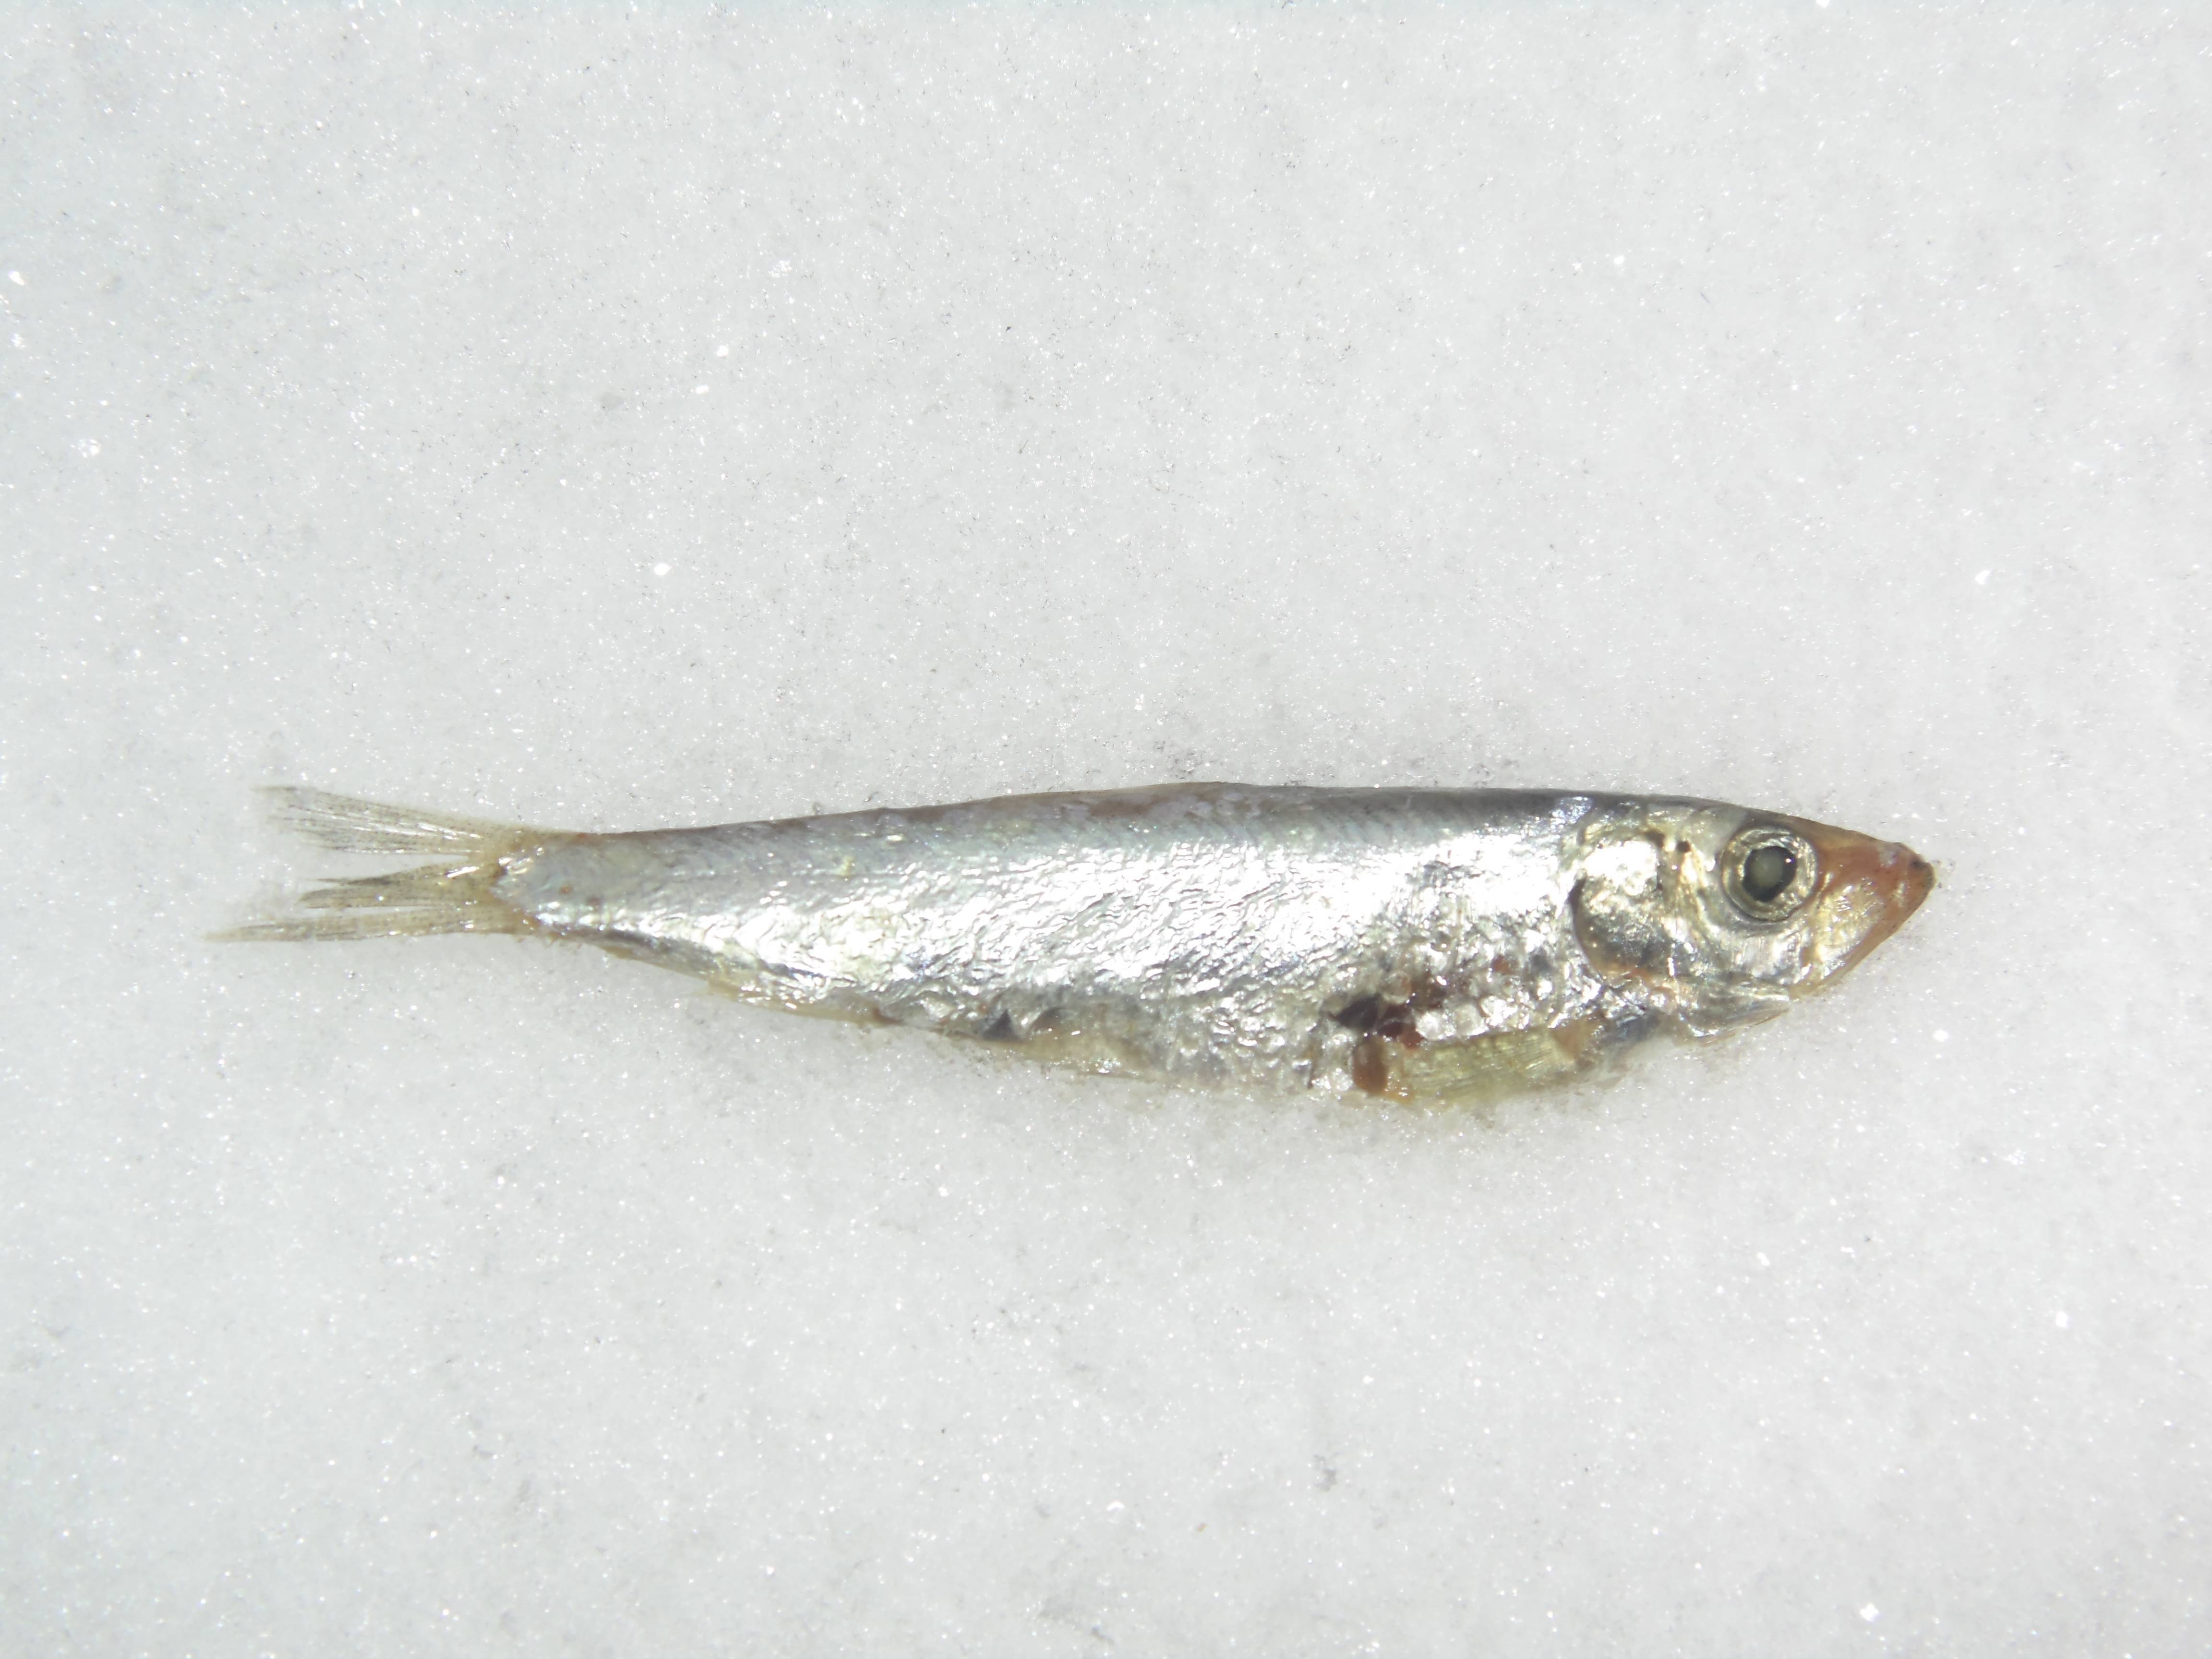 Тюлька абрауская фото и описание – каталог рыб, смотреть онлайн